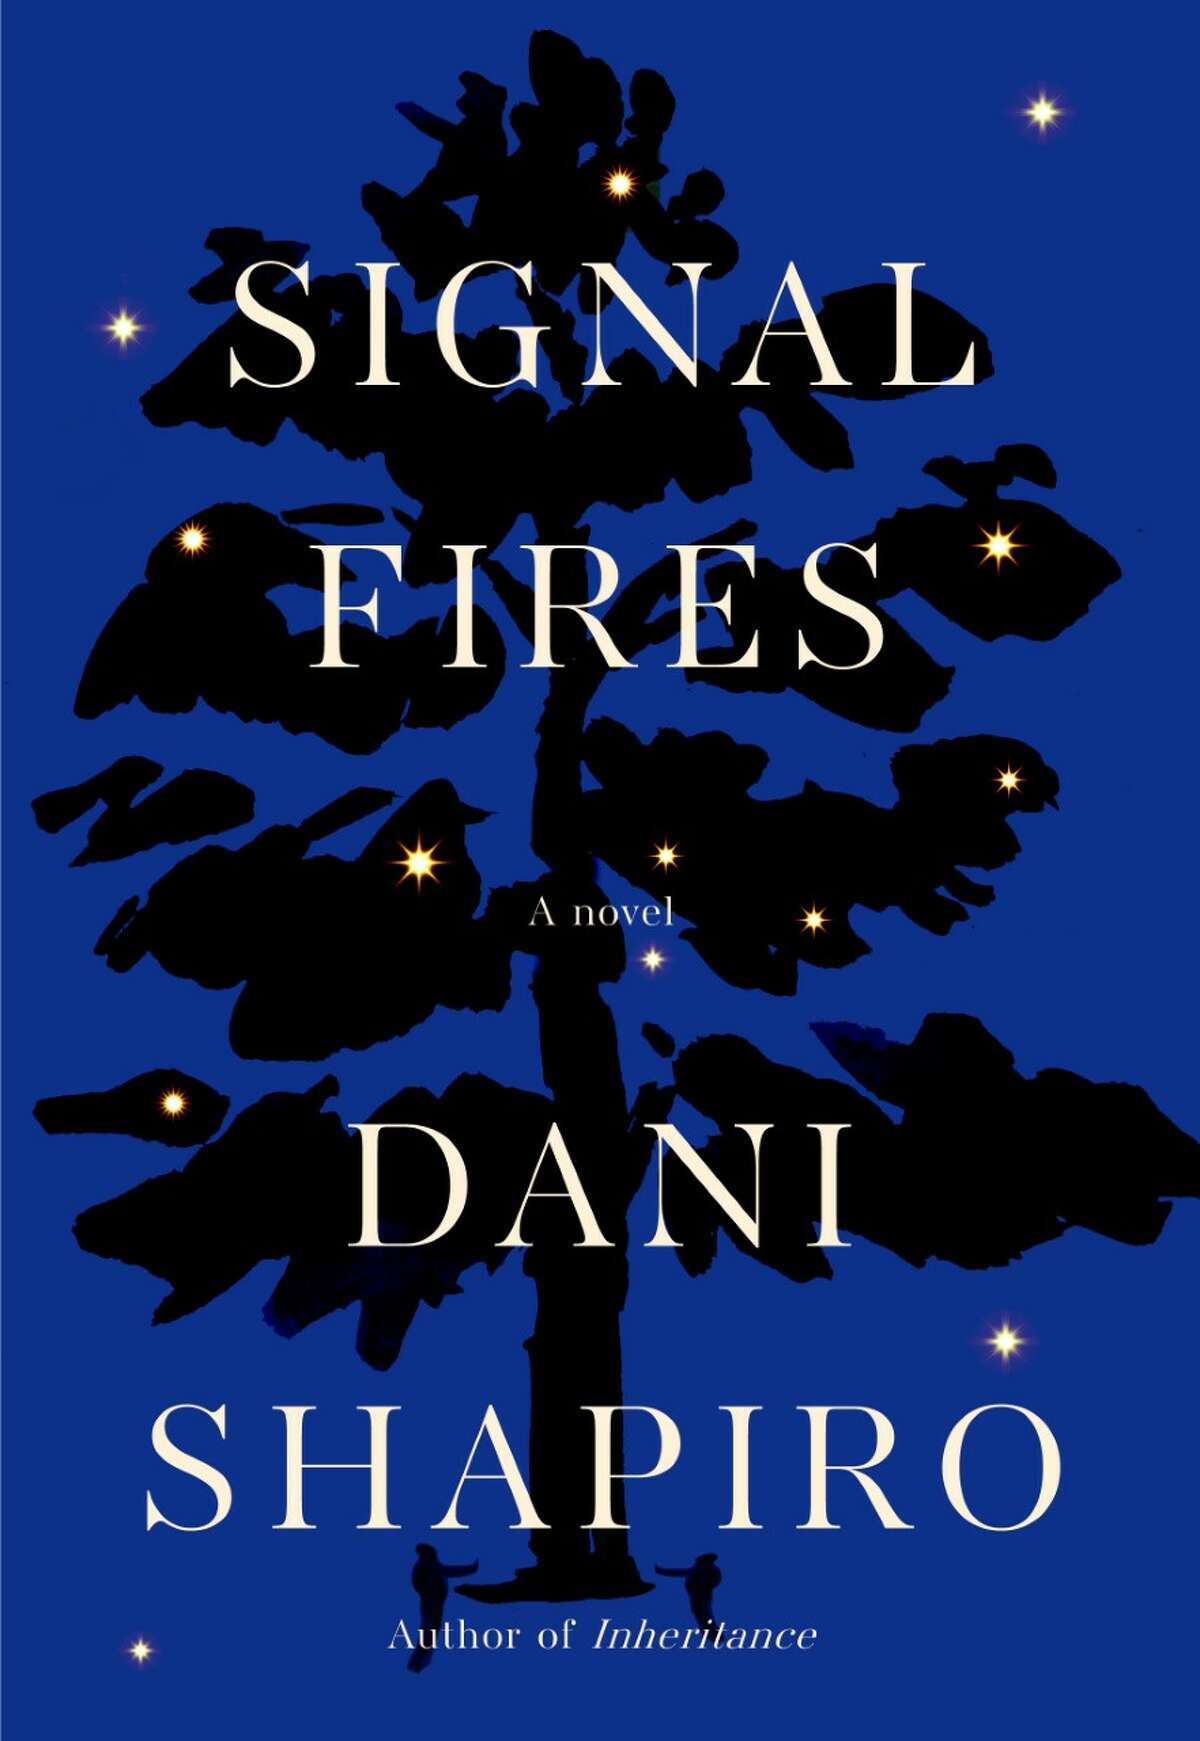 ผู้เขียนหนังสือเล่มล่าสุดของ Dani Shapiro "สัญญาณไฟ" ถูกตีพิมพ์ในเดือนตุลาคม  